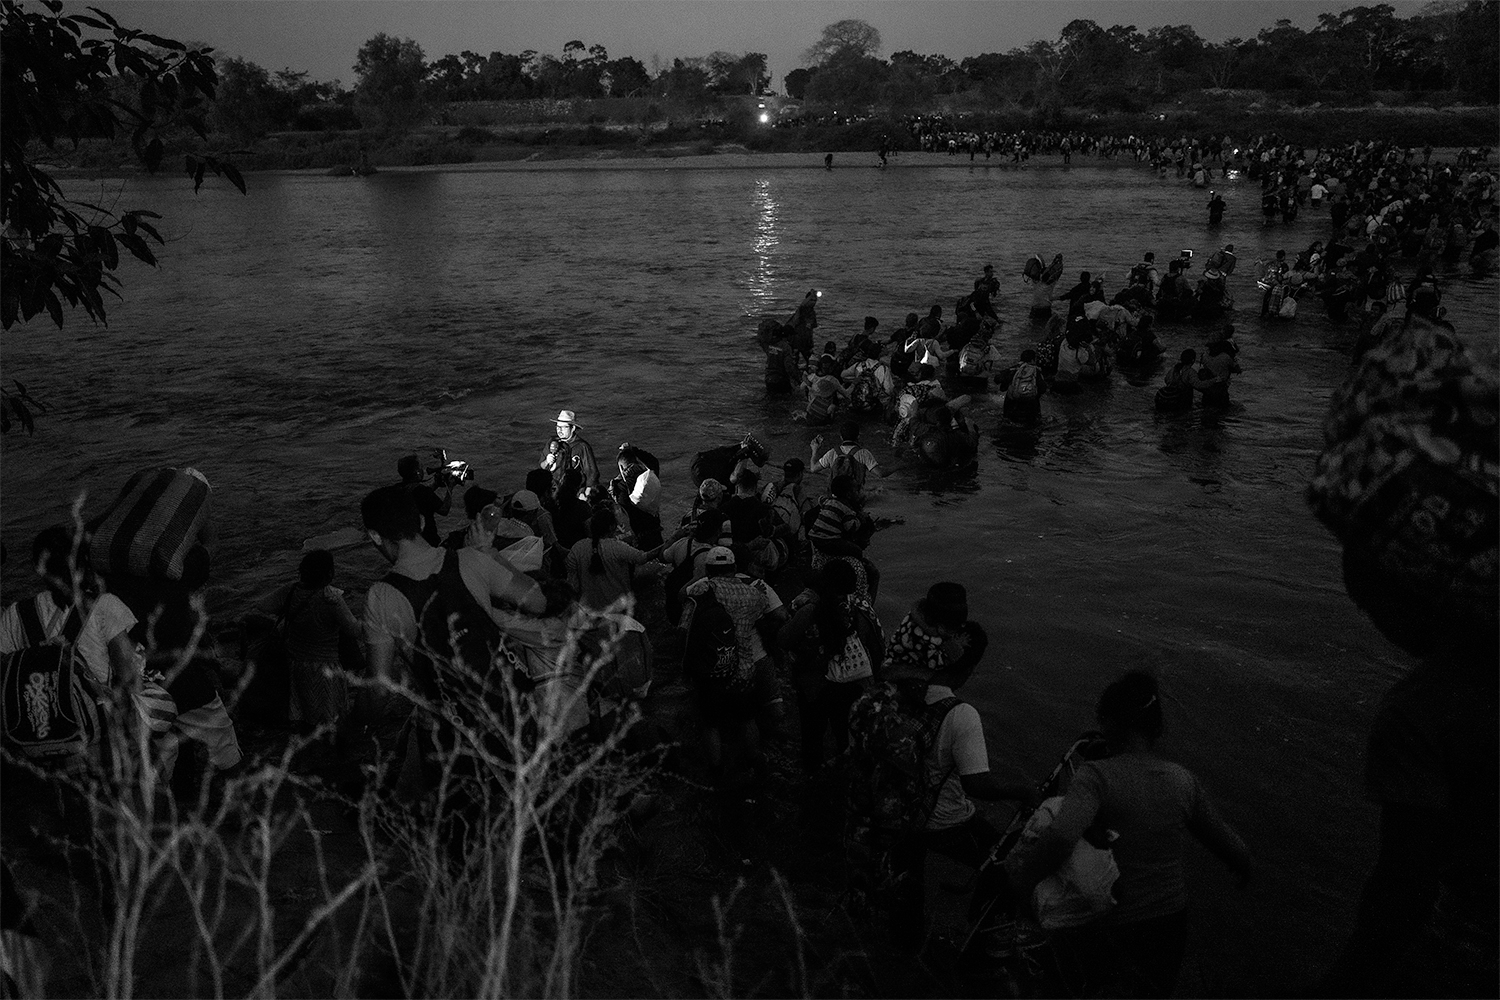     Ada Trillo, Crossing The Suchiate River, 2020

